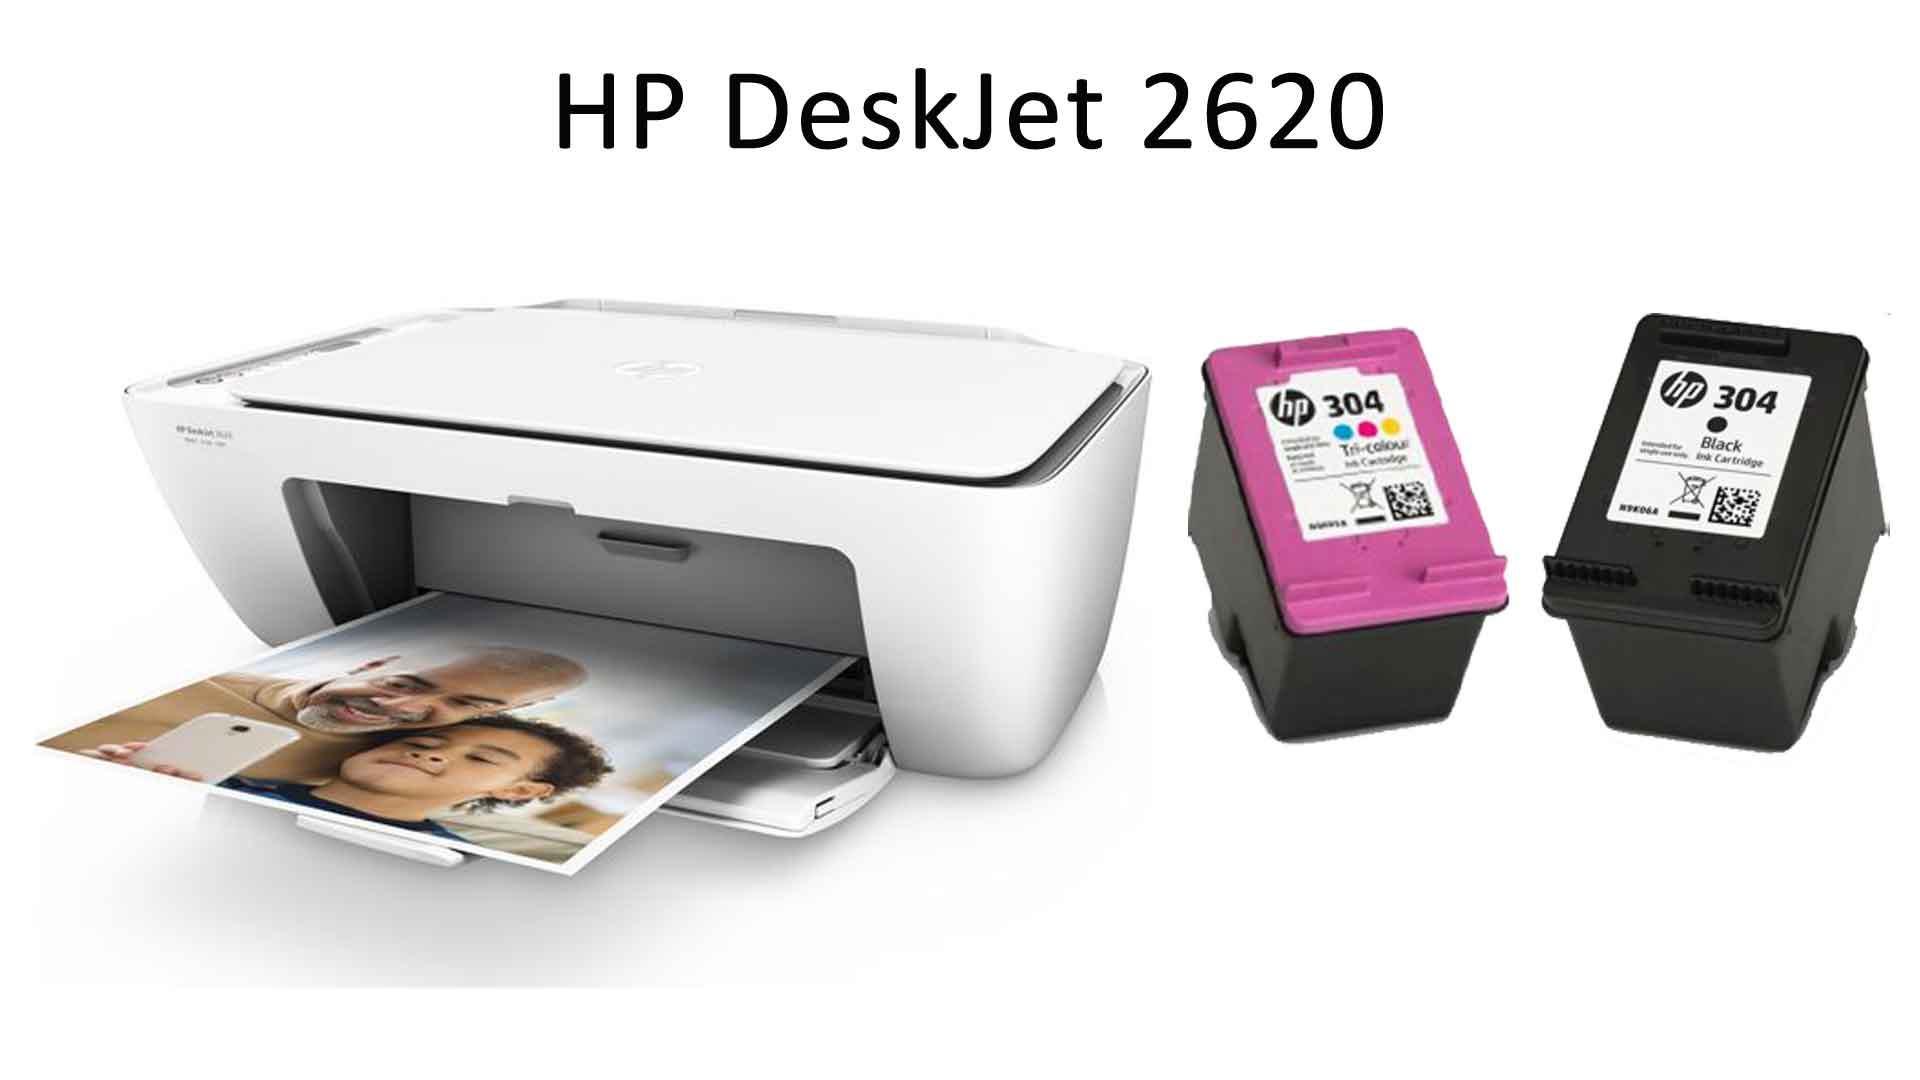 Купить принтер 2320. Принтер Deskjet 2320.